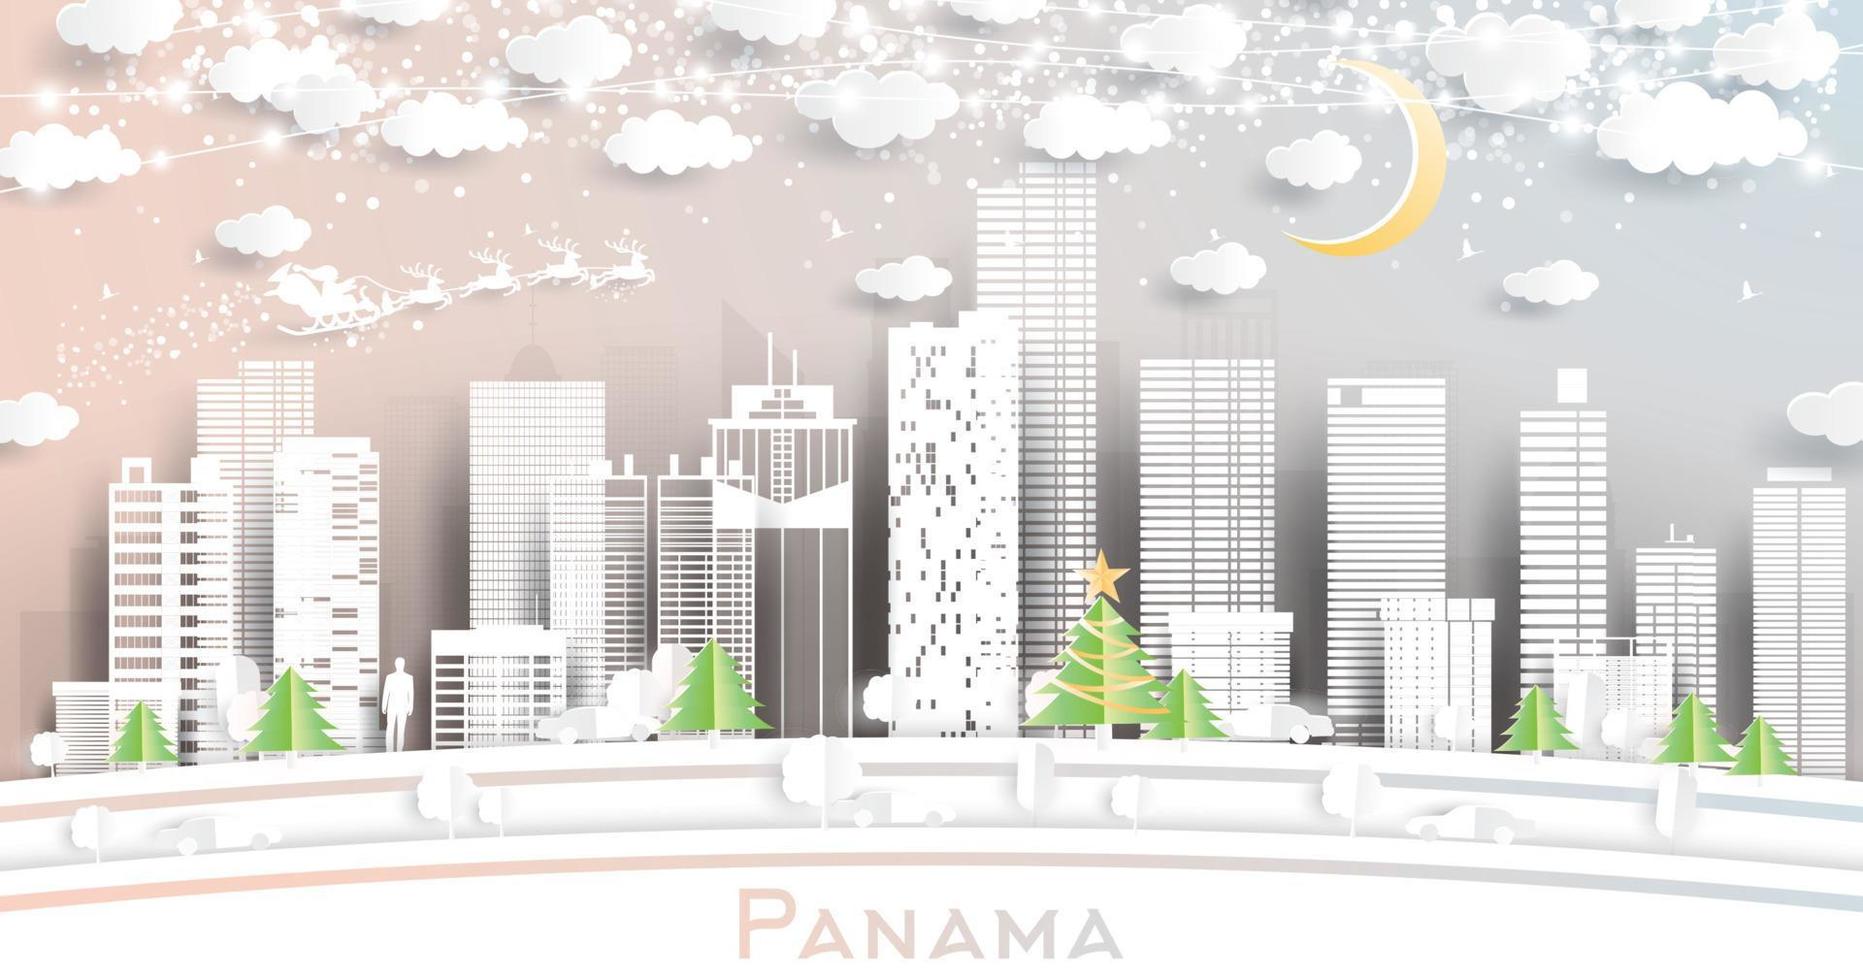 toits de la ville de panama dans un style découpé en papier avec des flocons de neige, une lune et une guirlande de néons. vecteur